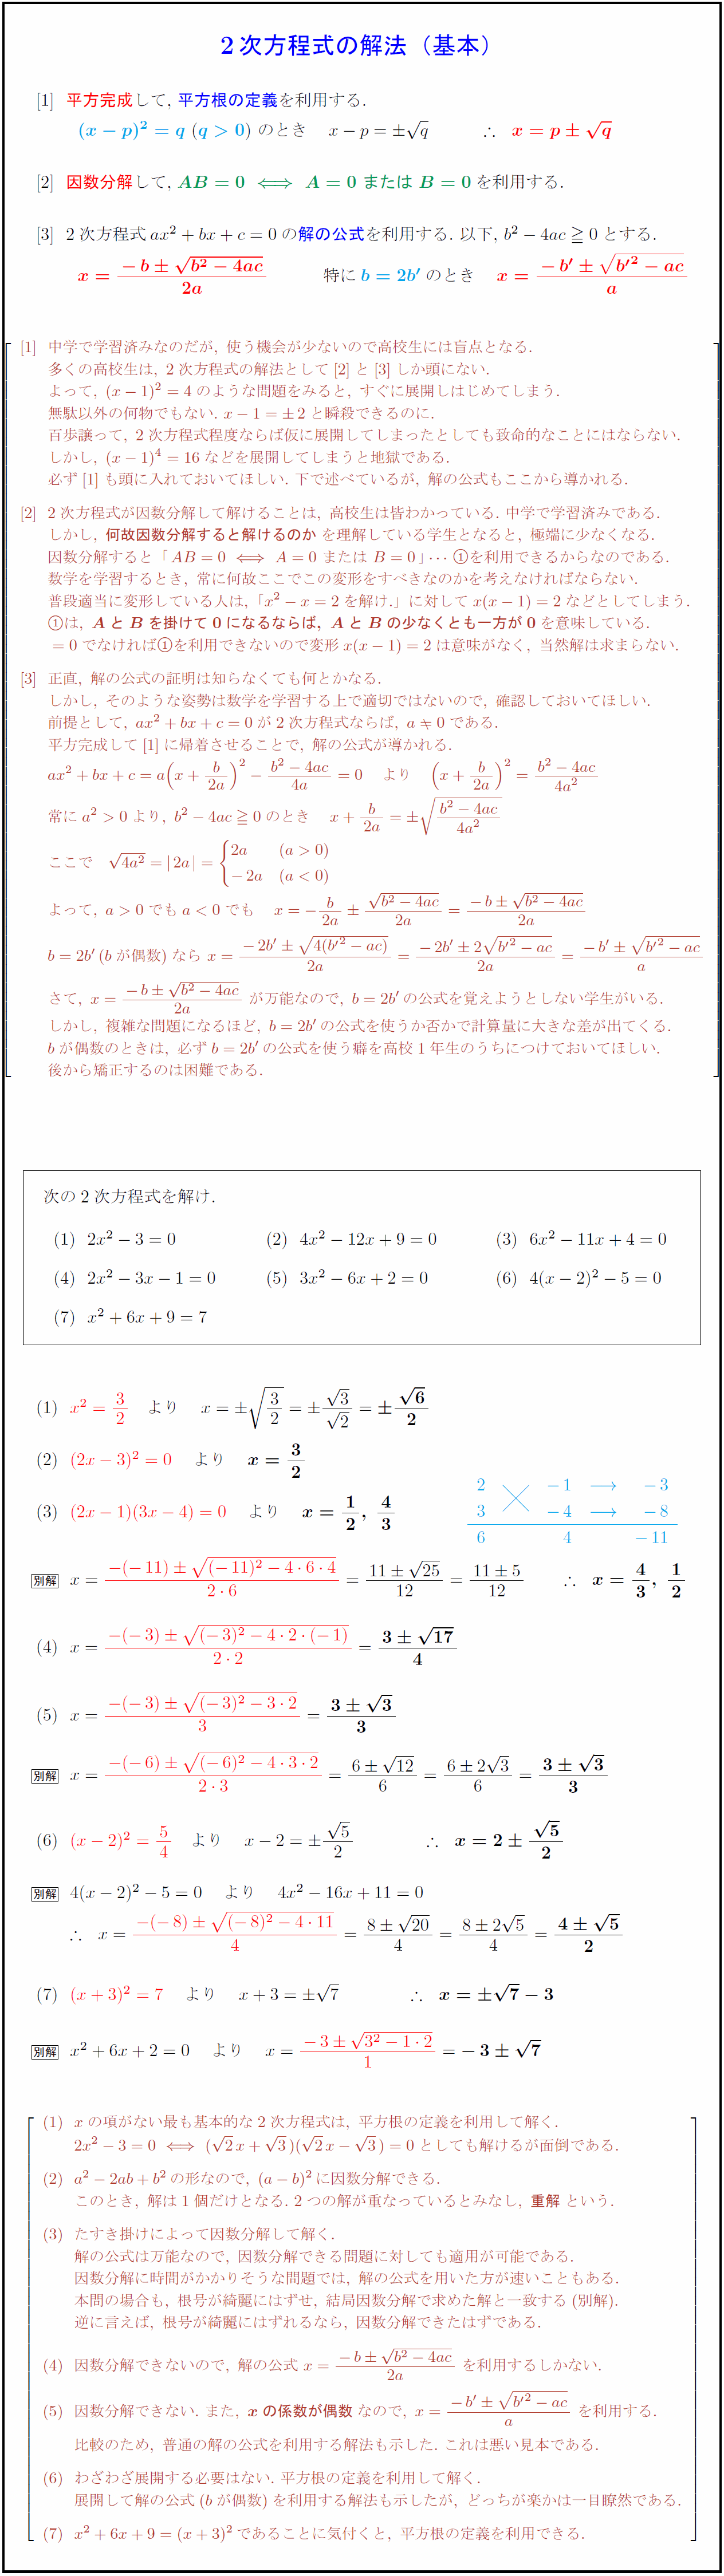 公式 の 解 次 二 方程式 二次方程式における解と係数の関係